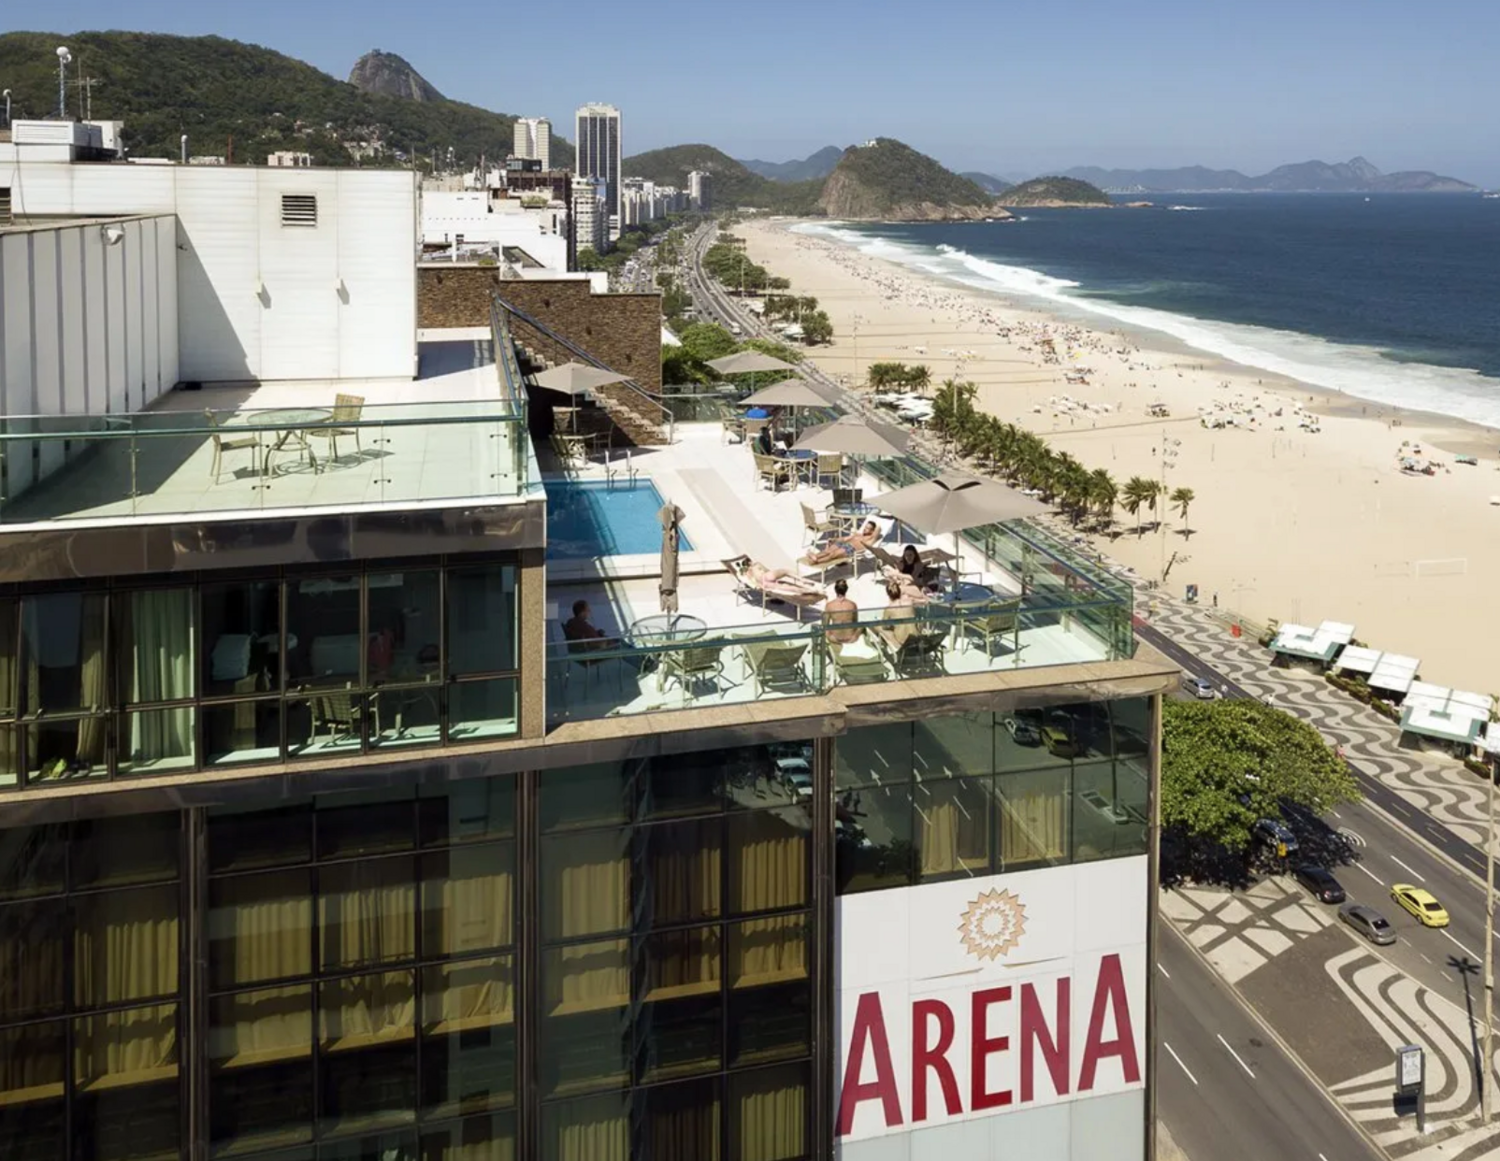 Arena Copacabana